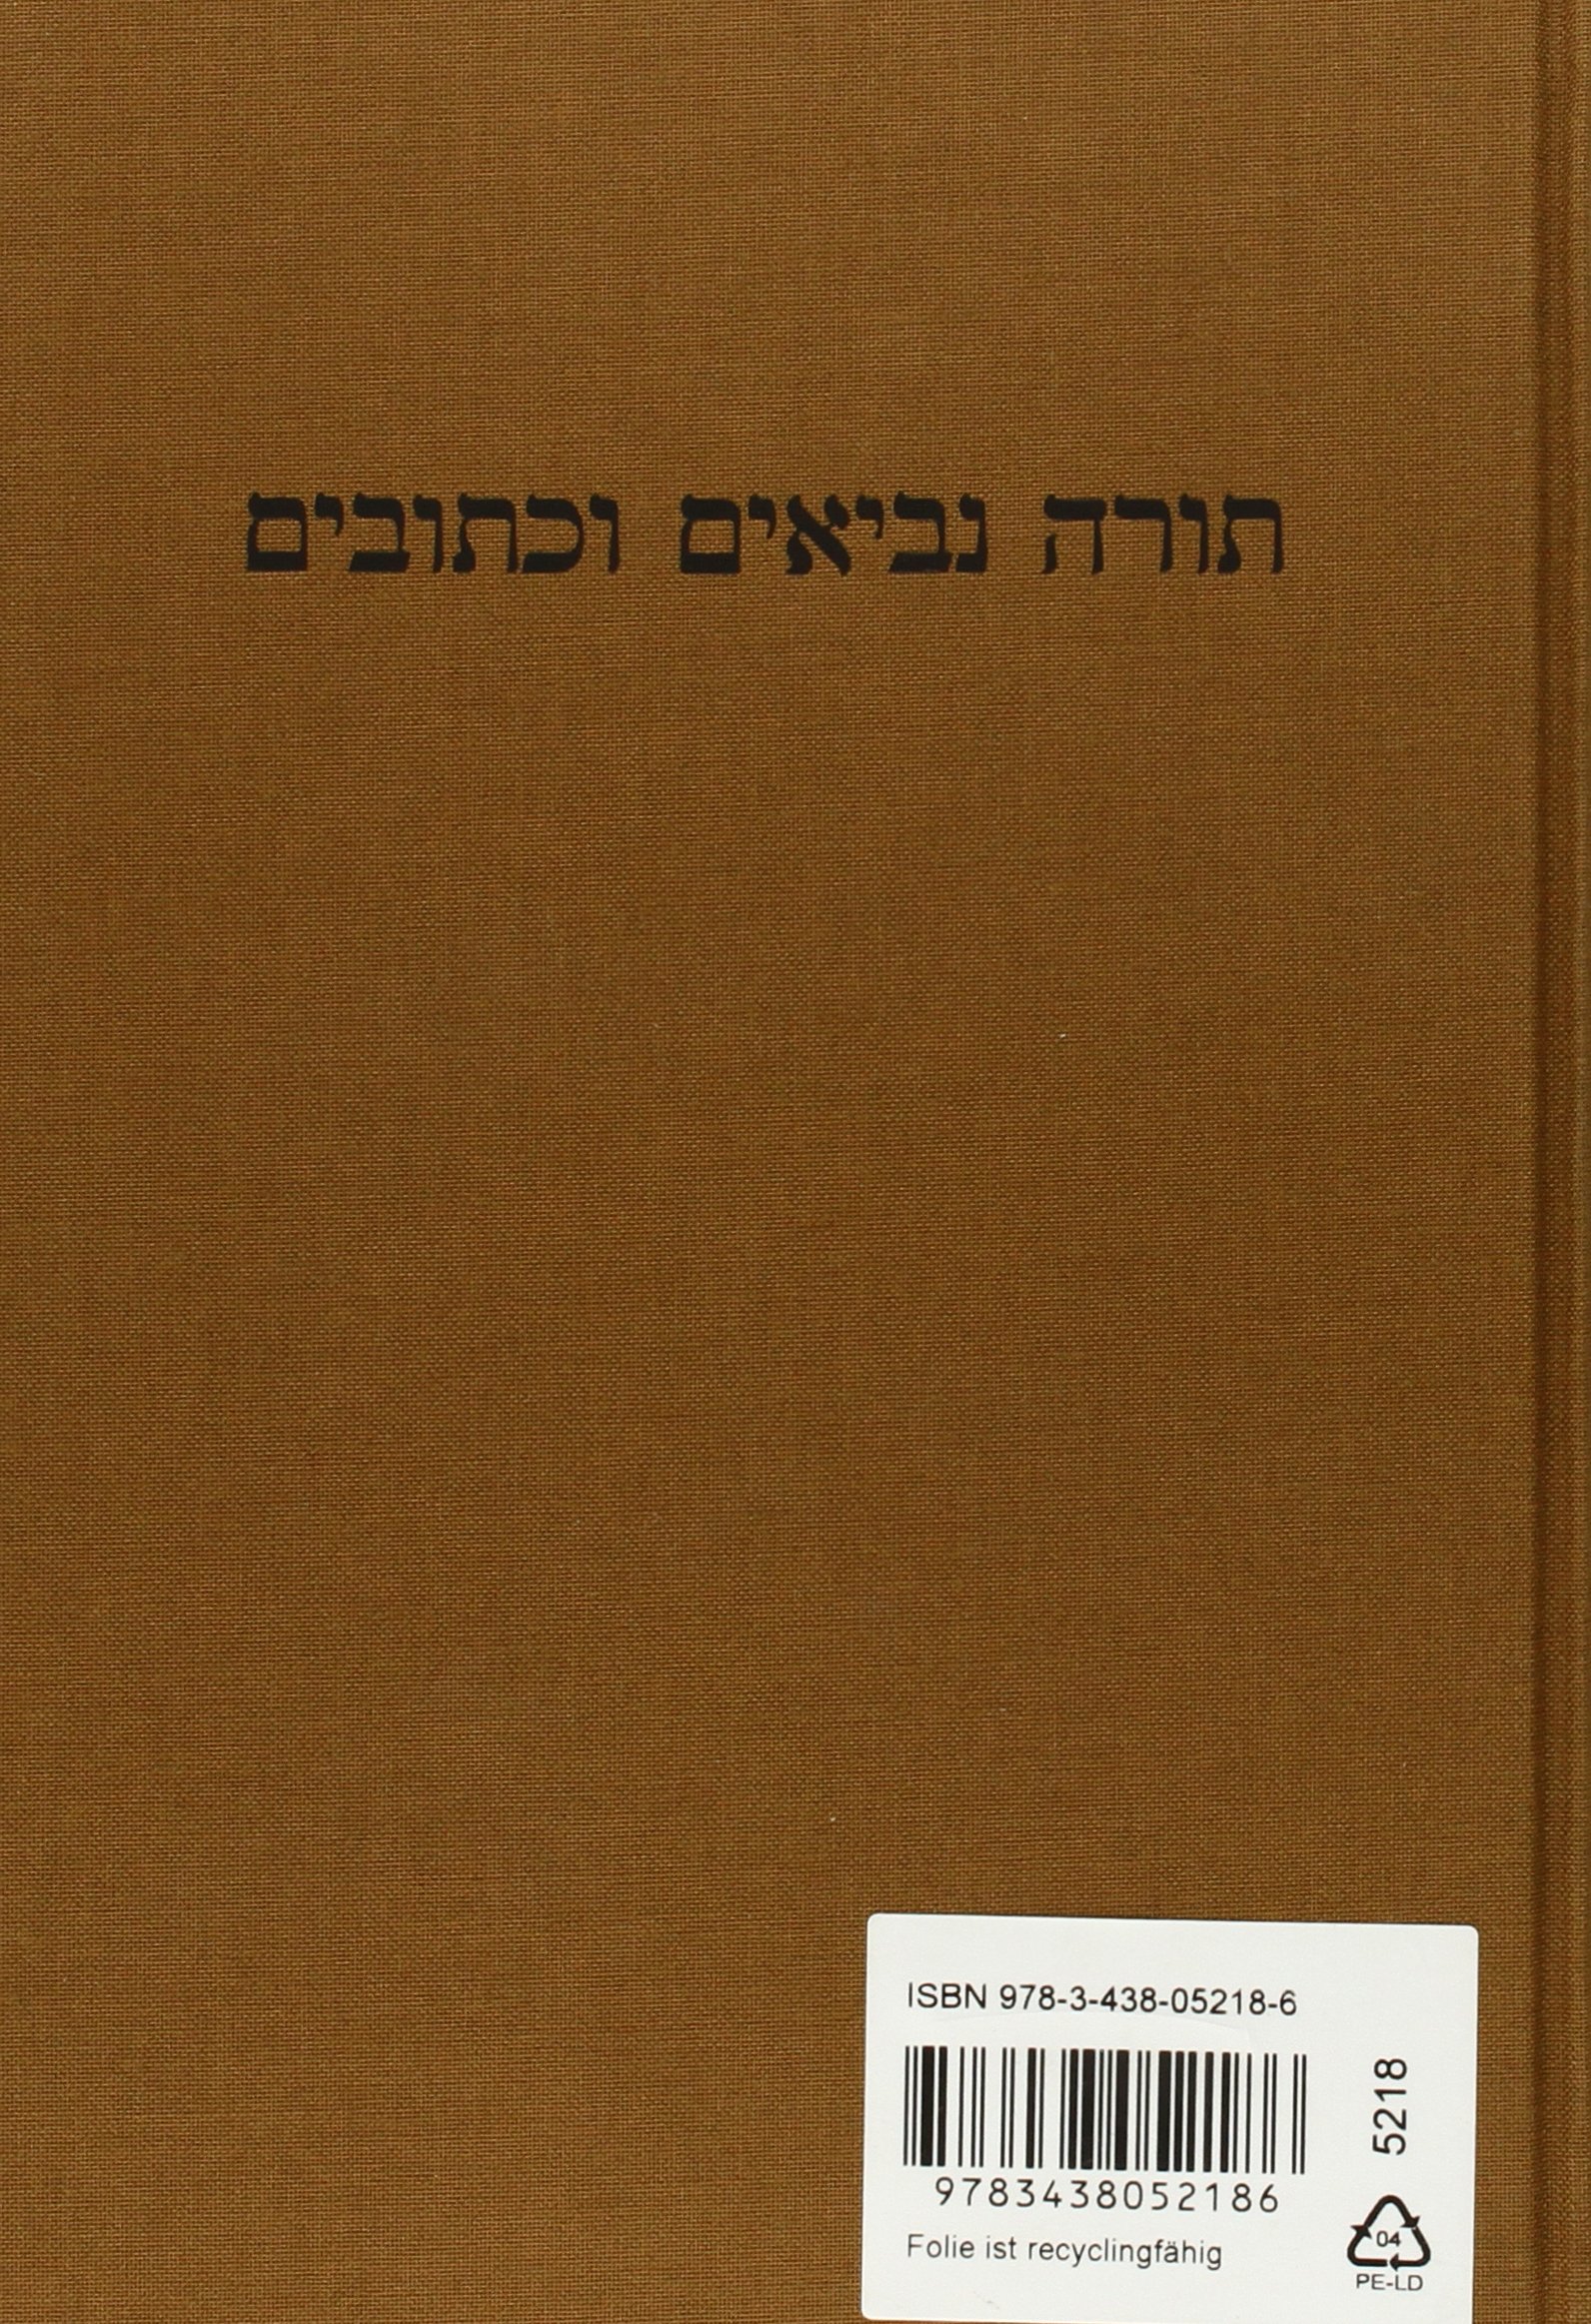 Biblia Hebraica Stuttgartensia (Editio Secunda Emendata) (Hebrew Edition)